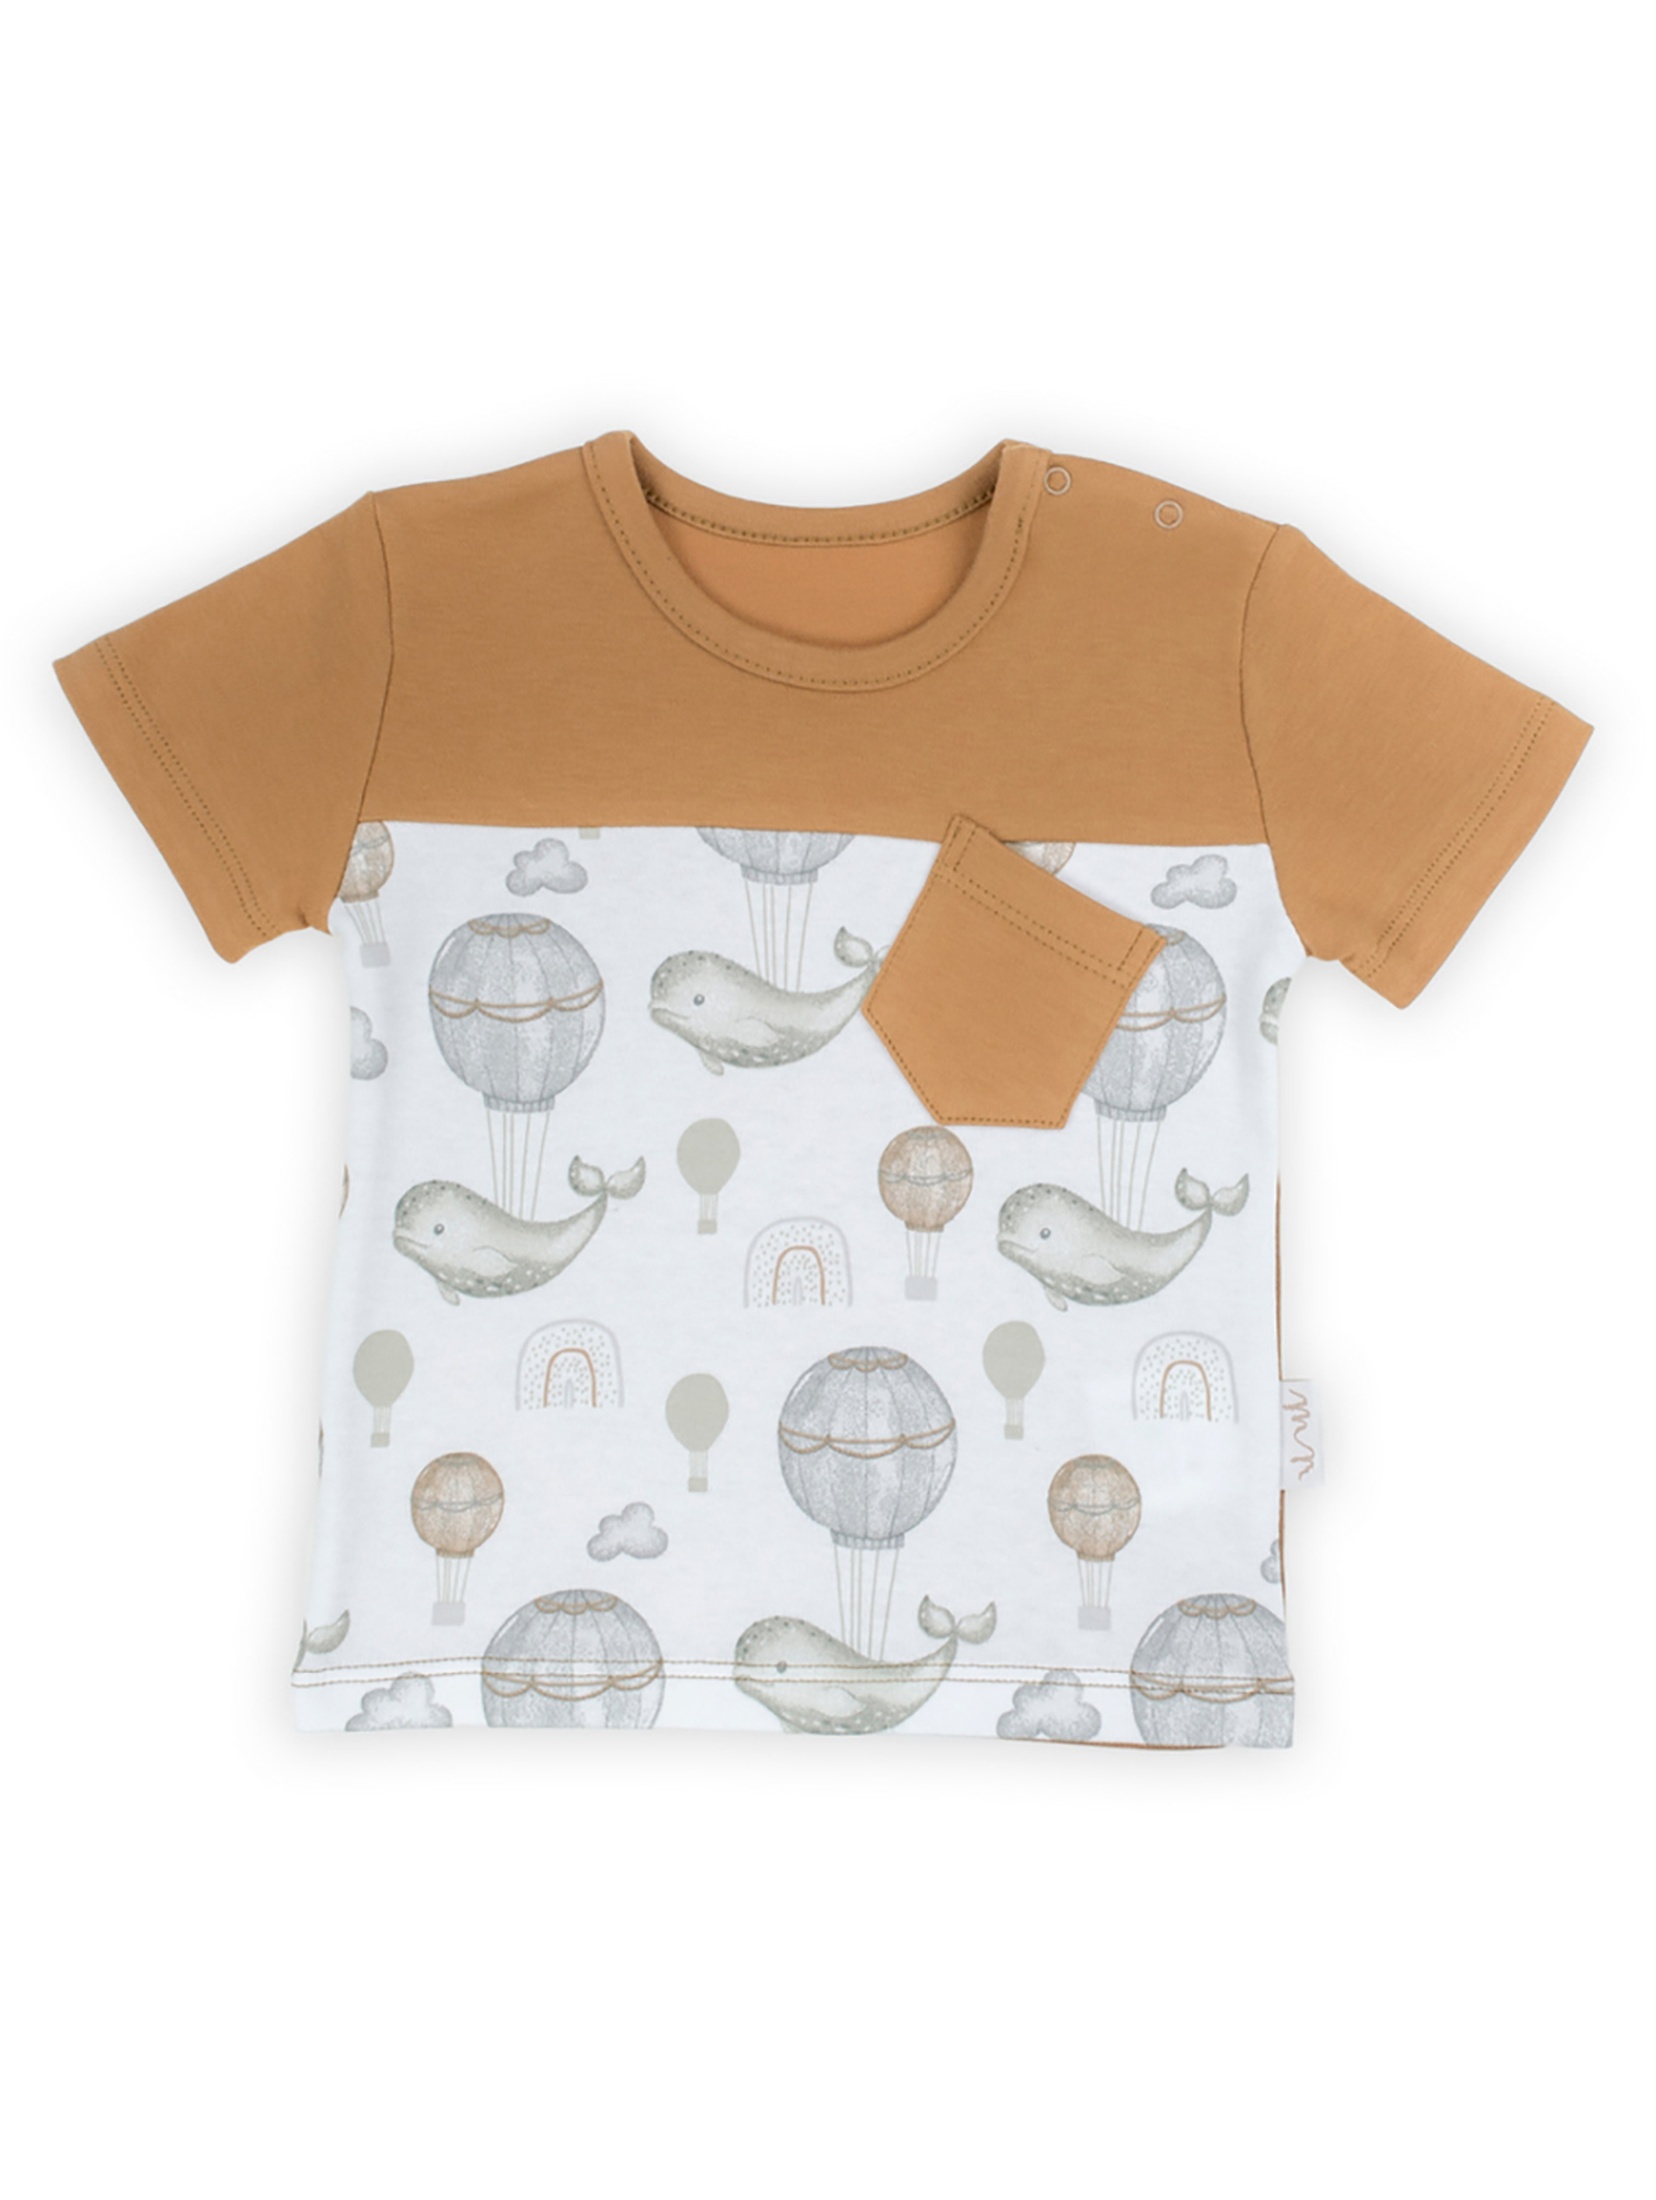 Bawełniany t-shirt dla niemowlaka z kieszonką- wieloryby i balony